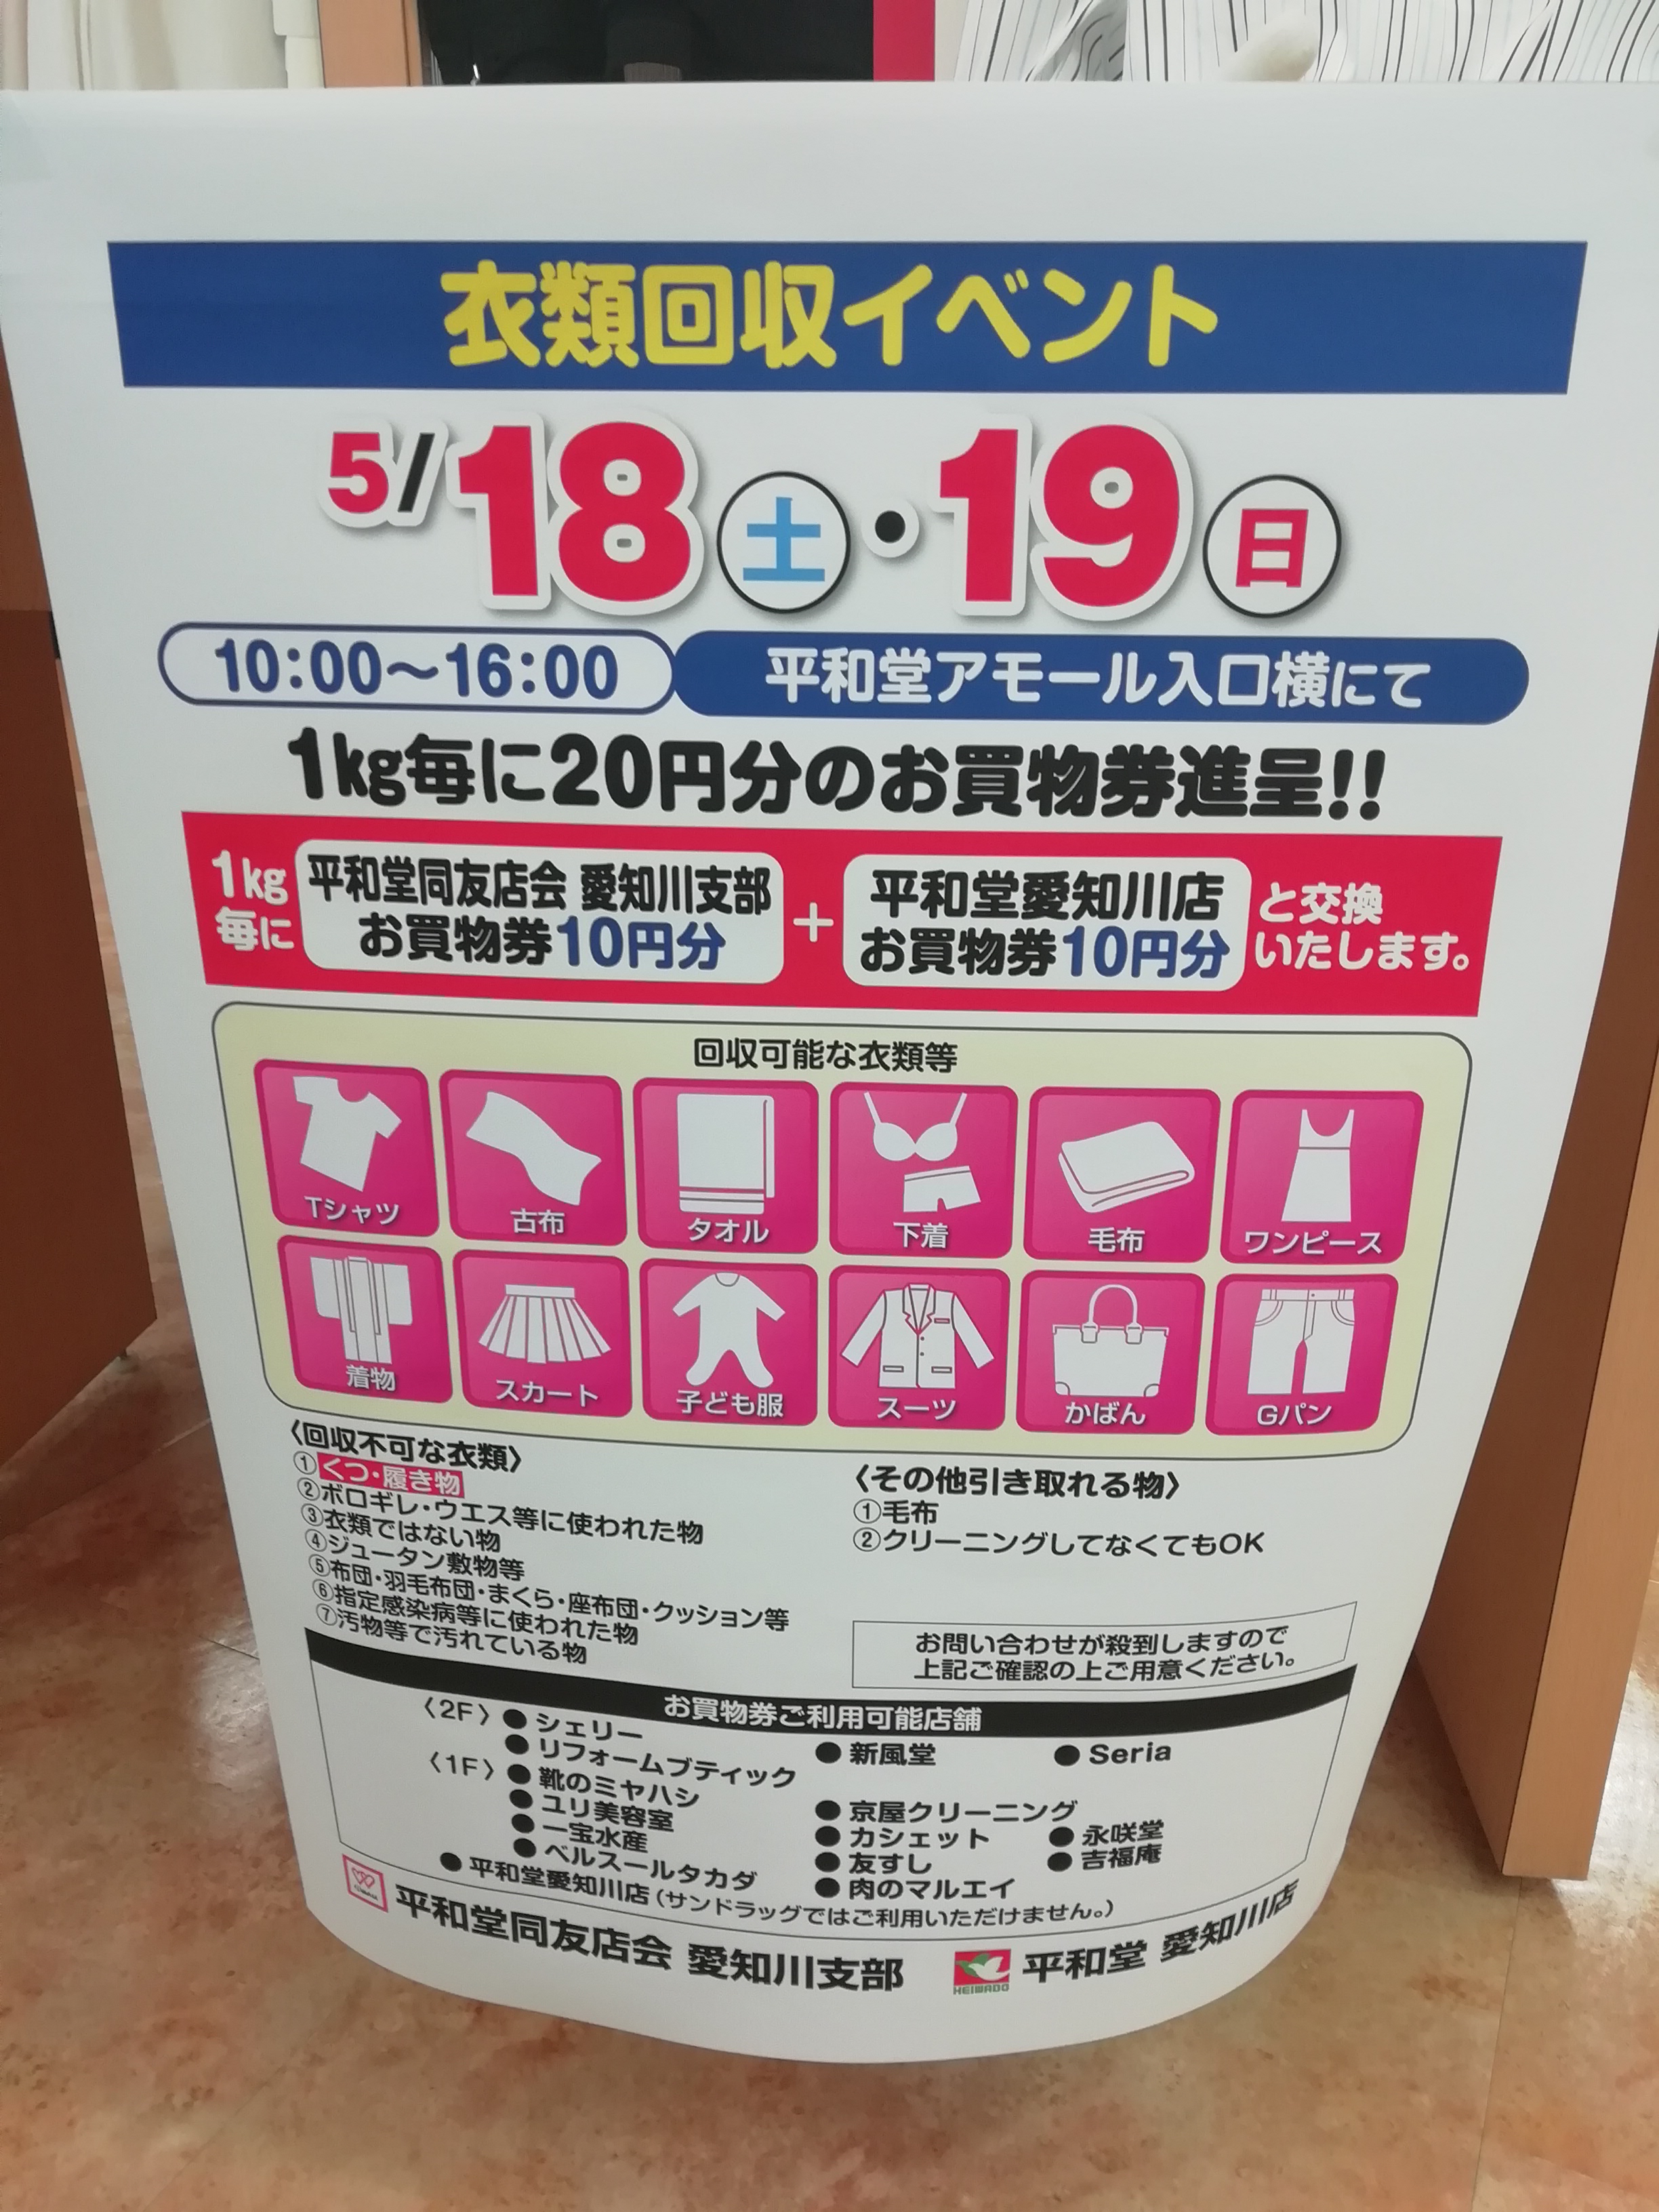 5月18日 19日 愛知川 平和堂アモールにて 衣類回収イベント 開催 1kg毎に店内各店で使えるお買い物券がもらえます 滋賀のママがイベント 育児 遊び 学びを発信 シガマンマ ピースマム